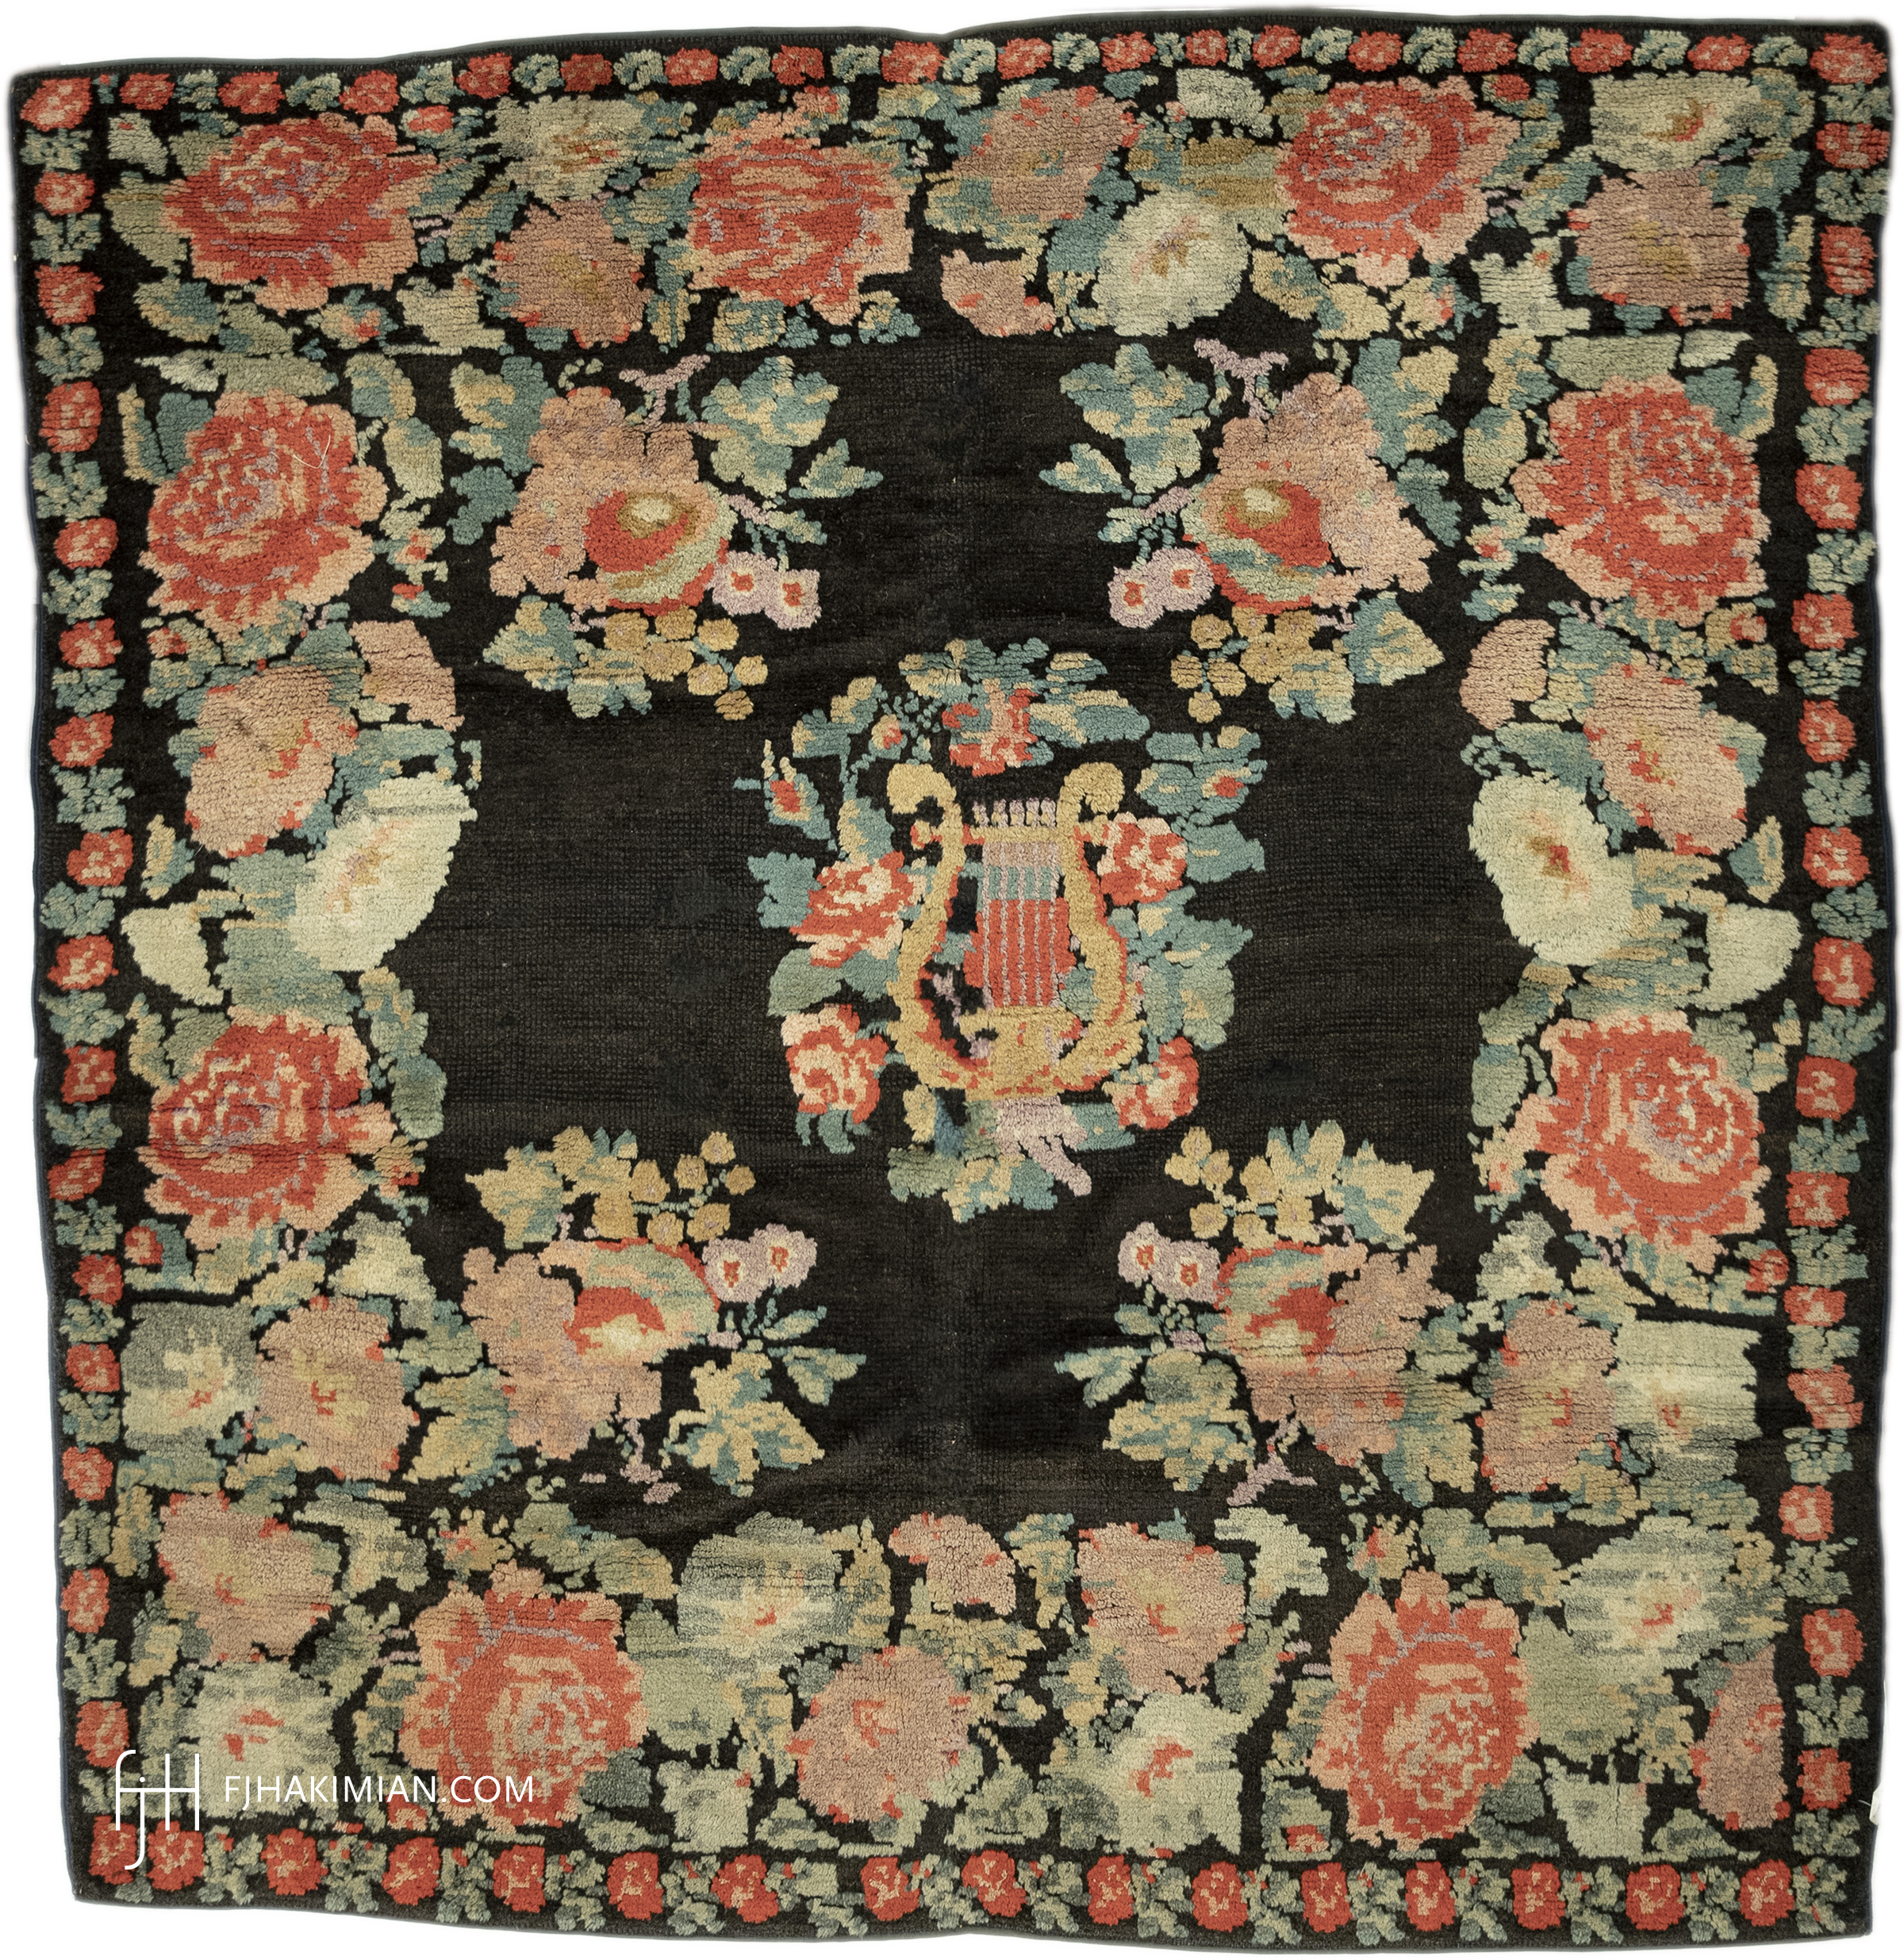 FJ Hakimian | 03013 | Vintage carpet